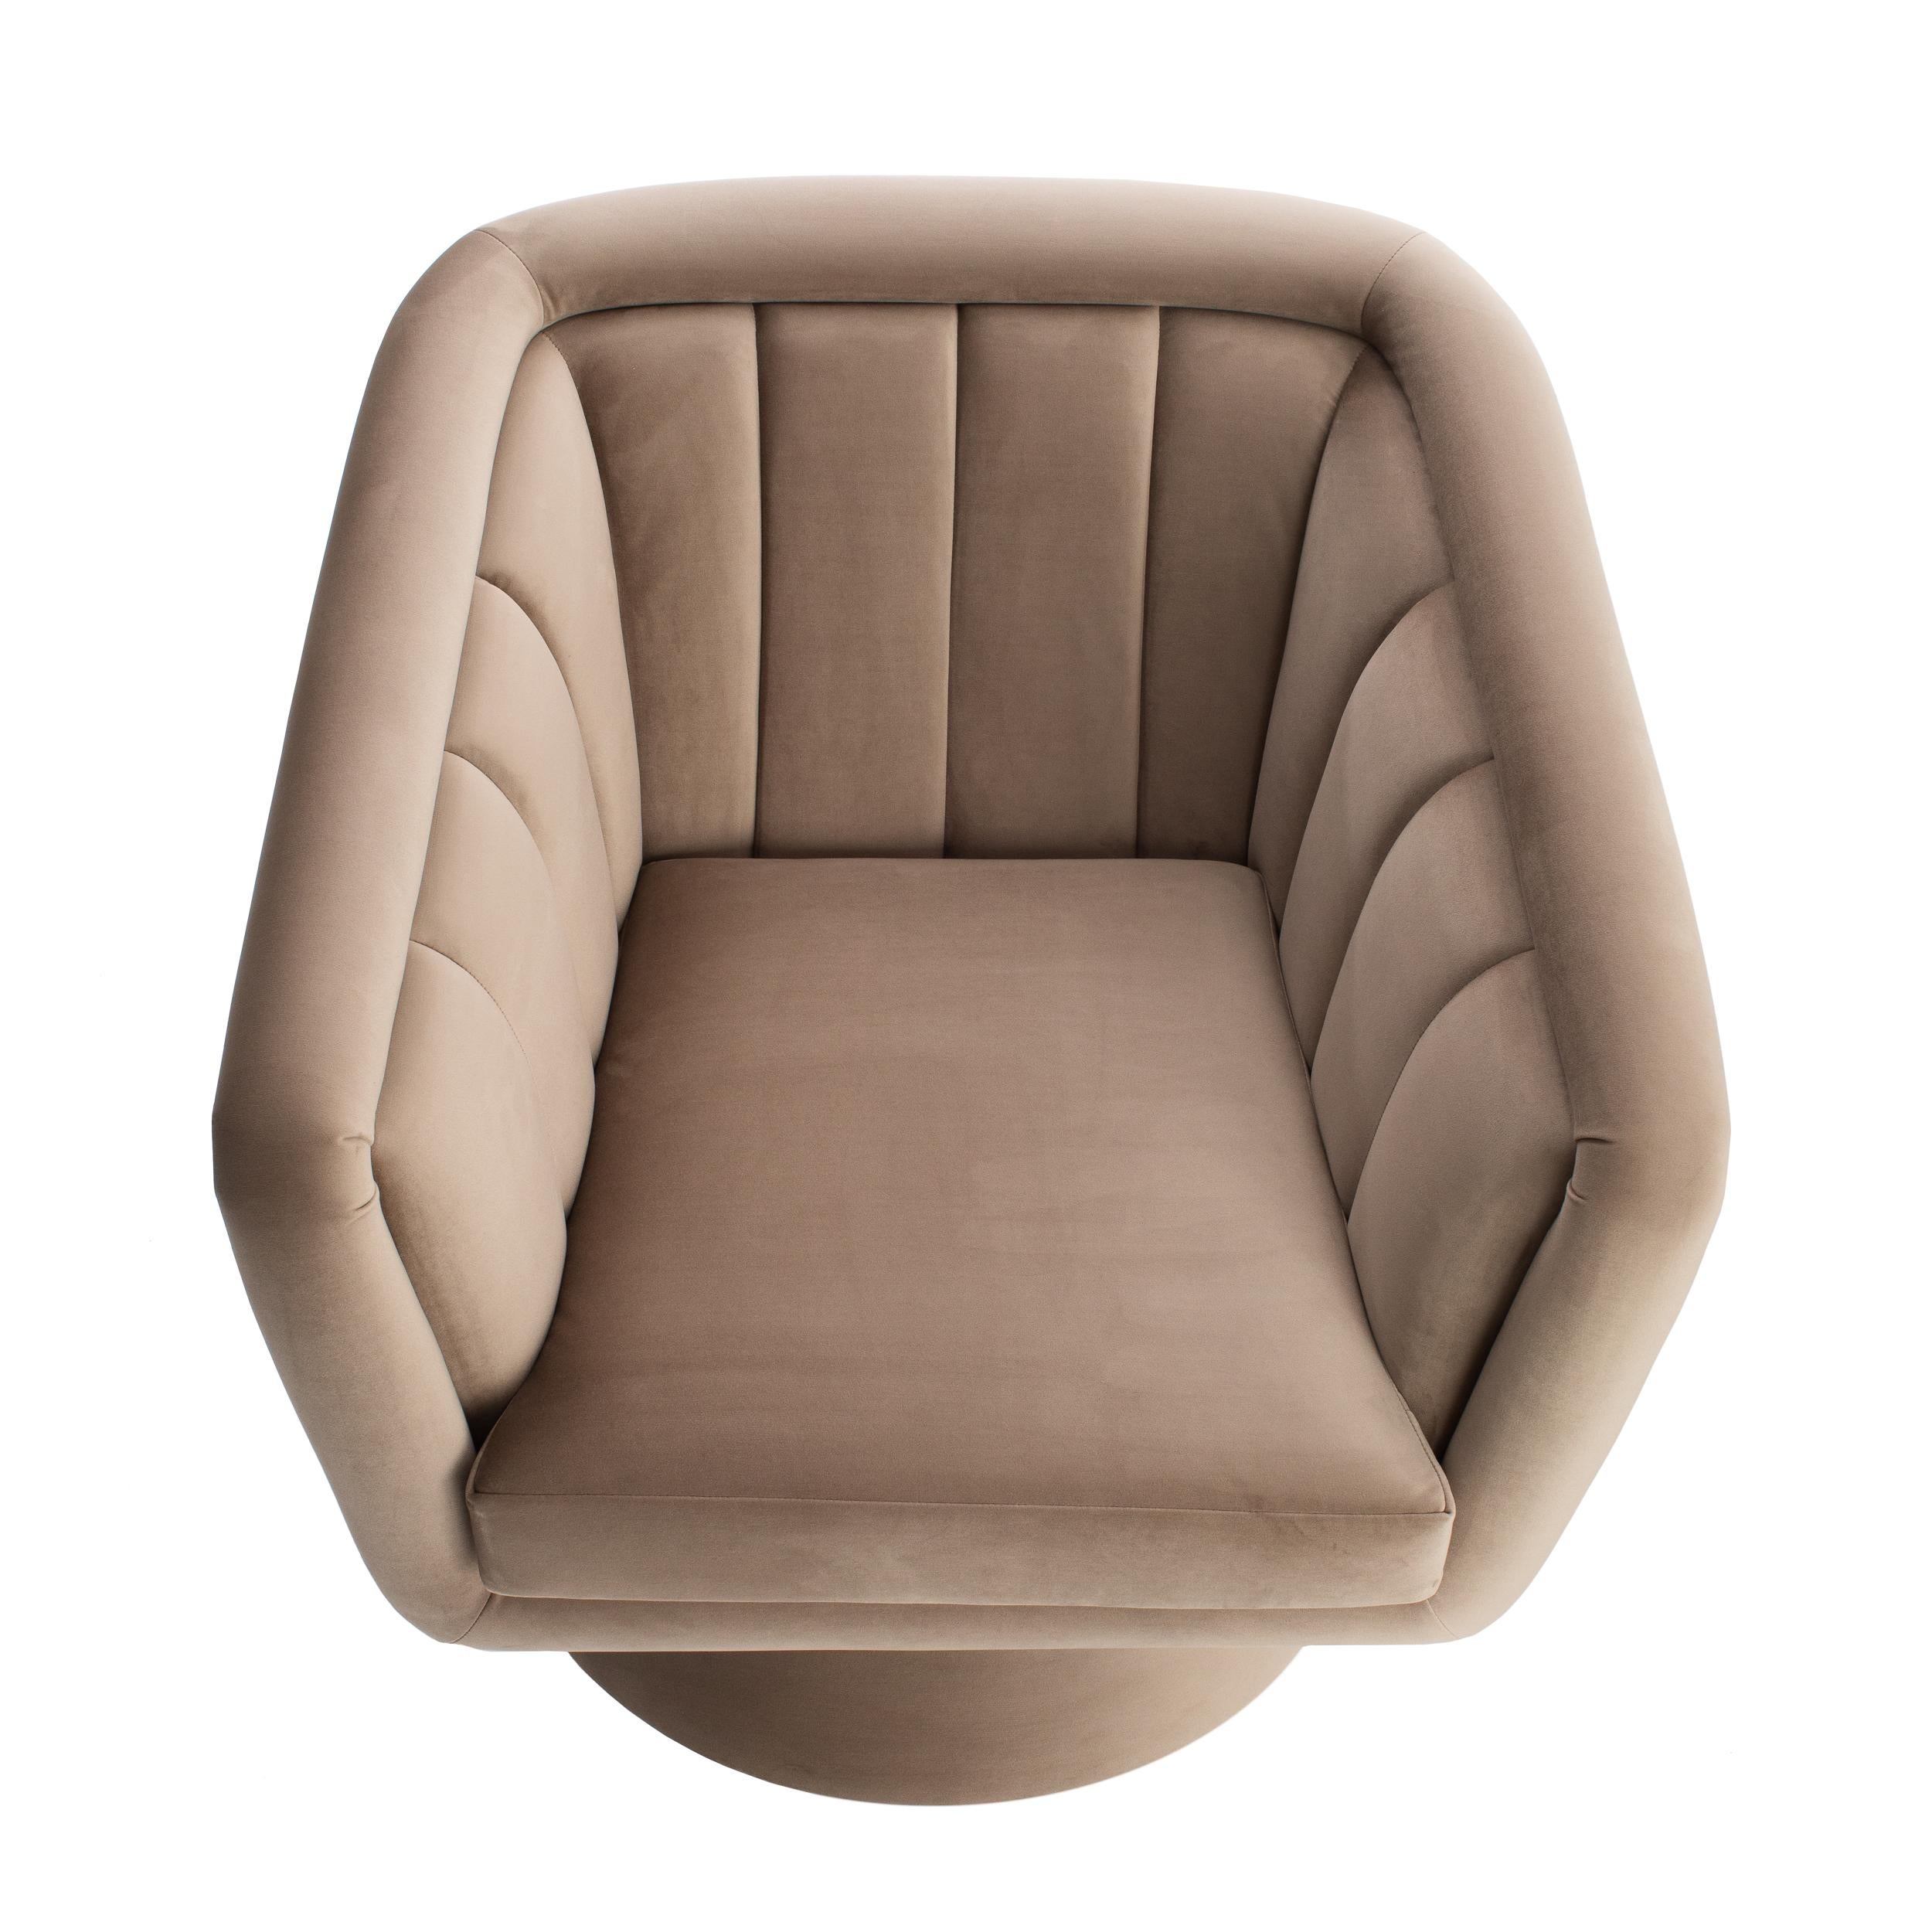 Der drehbare Sessel Caprice ist ein Dekorsessel, der mit seiner schlichten Steppung auf der Rückenlehne einen Hauch von Eleganz vermittelt. Erhältlich mit oder ohne Fußring in Messingfarbe. Auf Wunsch mit einer großen Auswahl an Stoffen oder